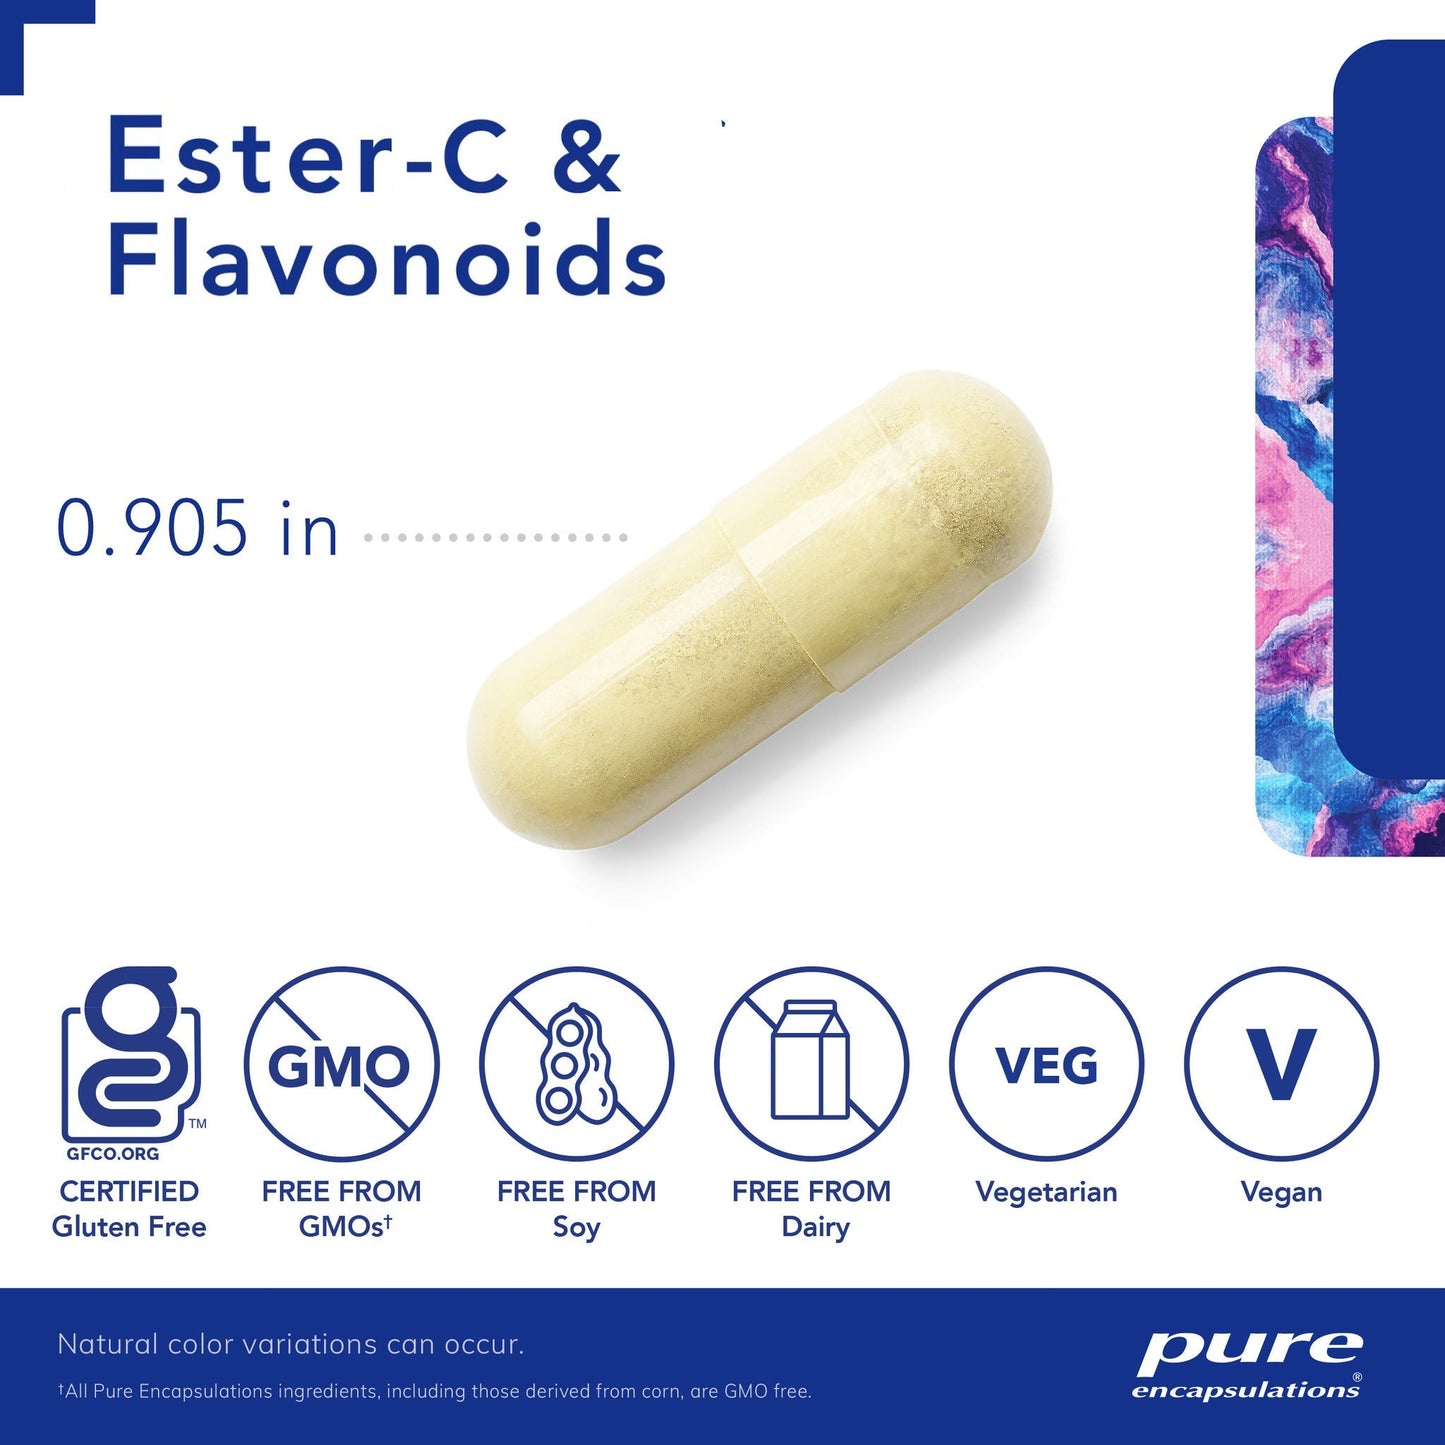 Ester-C & flavonoids